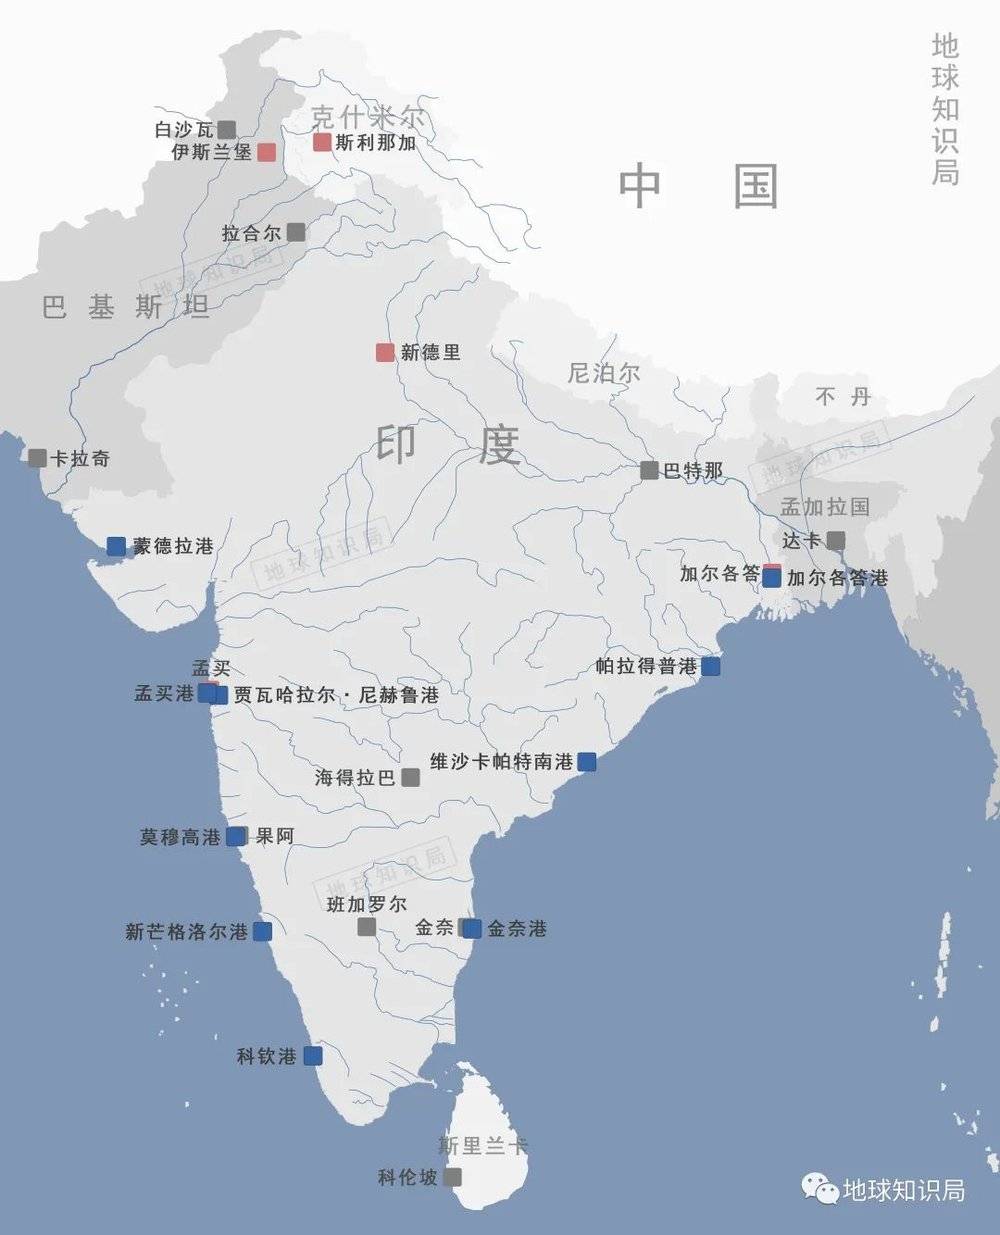 印度地图 放大图图片